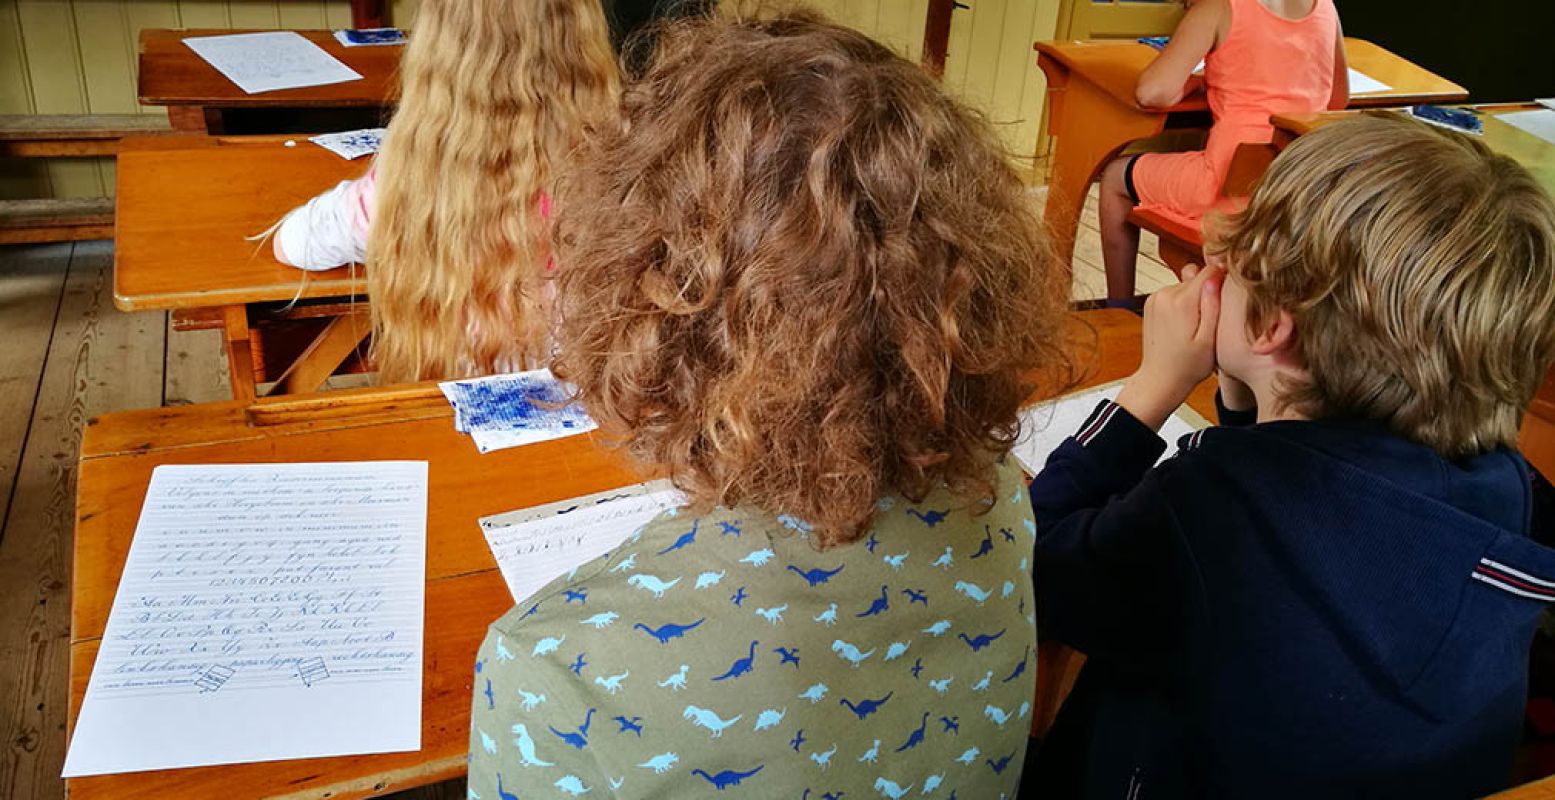 Leer in het oude schooltje schrijven met een kroontjespen. Zo deden ze dat vroeger ook! Foto: DagjeWeg.NL.